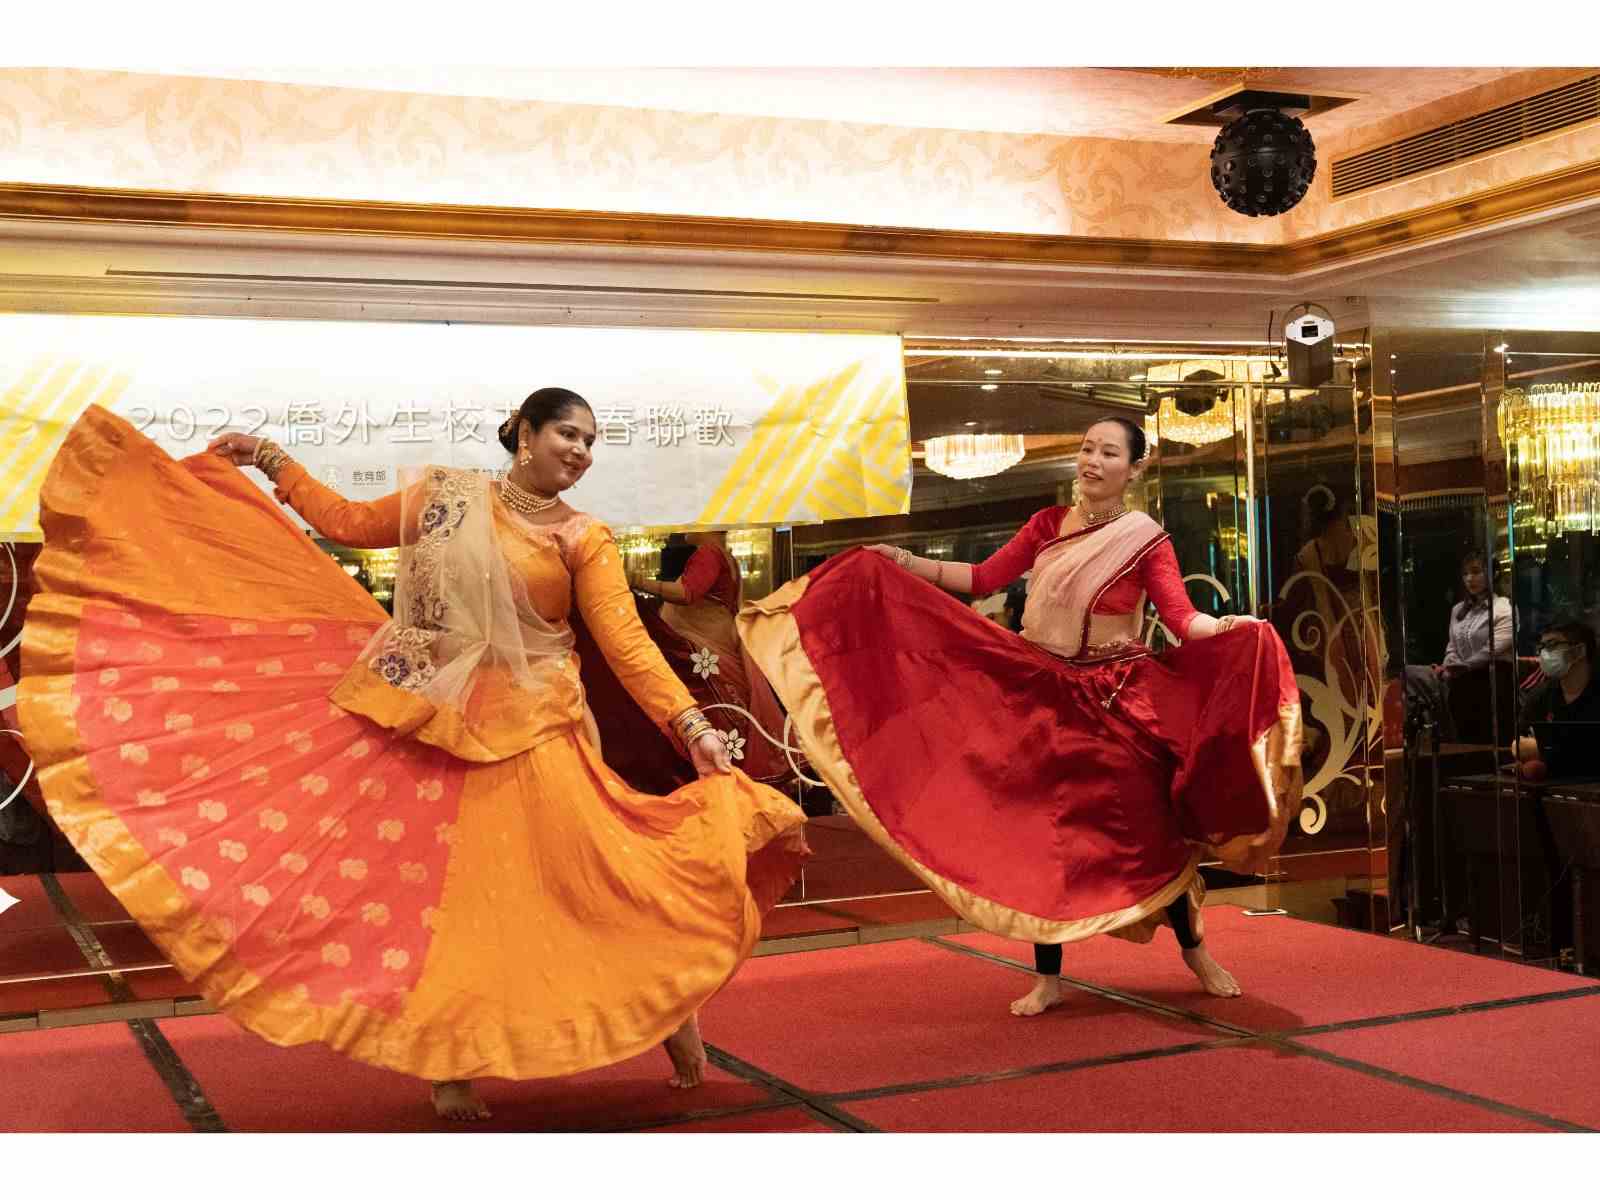 從印度舞蹈表演中，看見了善與優雅